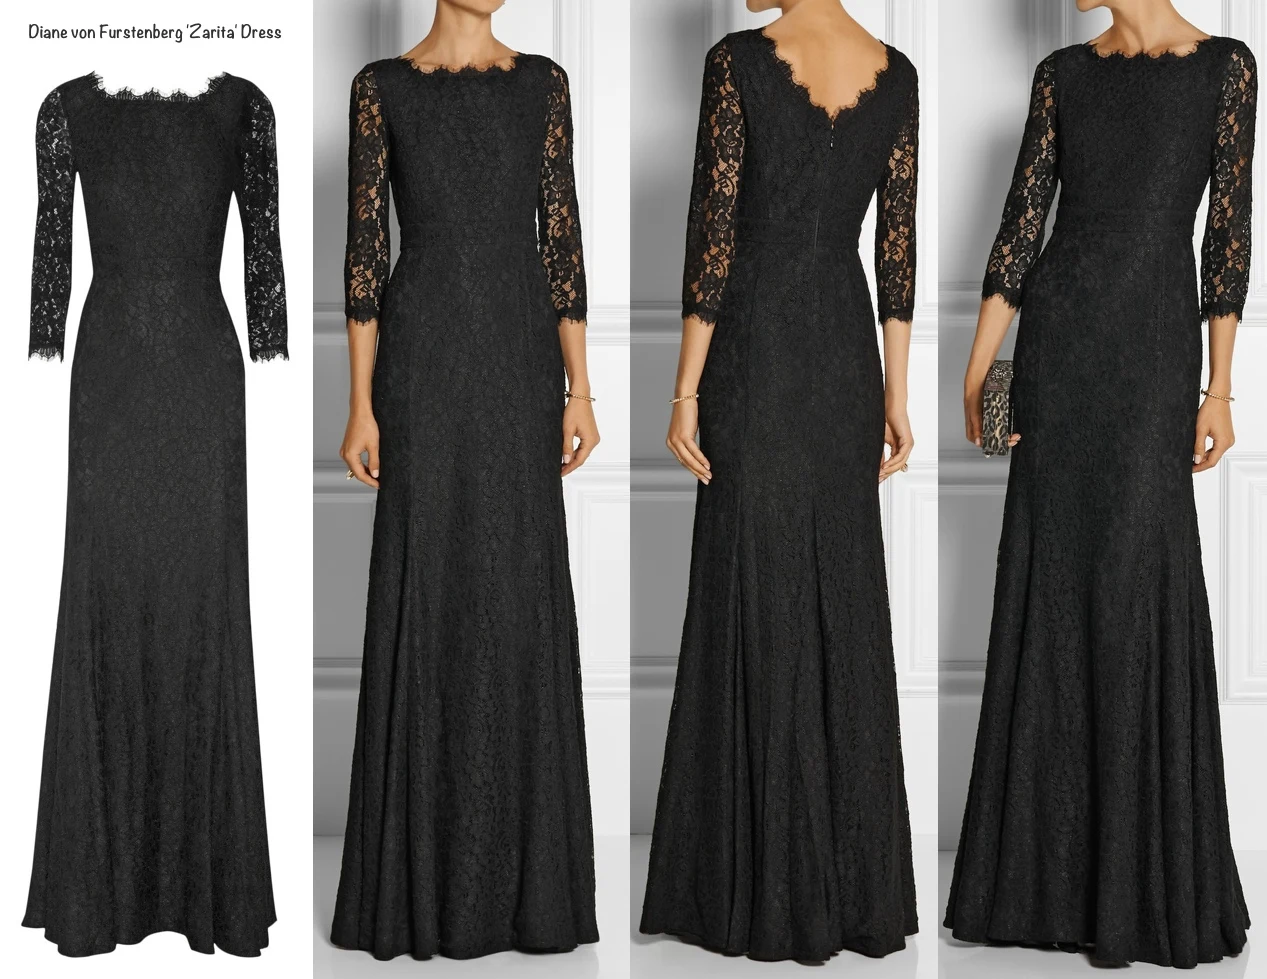 Black Lace Zarita DVF Diane von Furstenberg gown